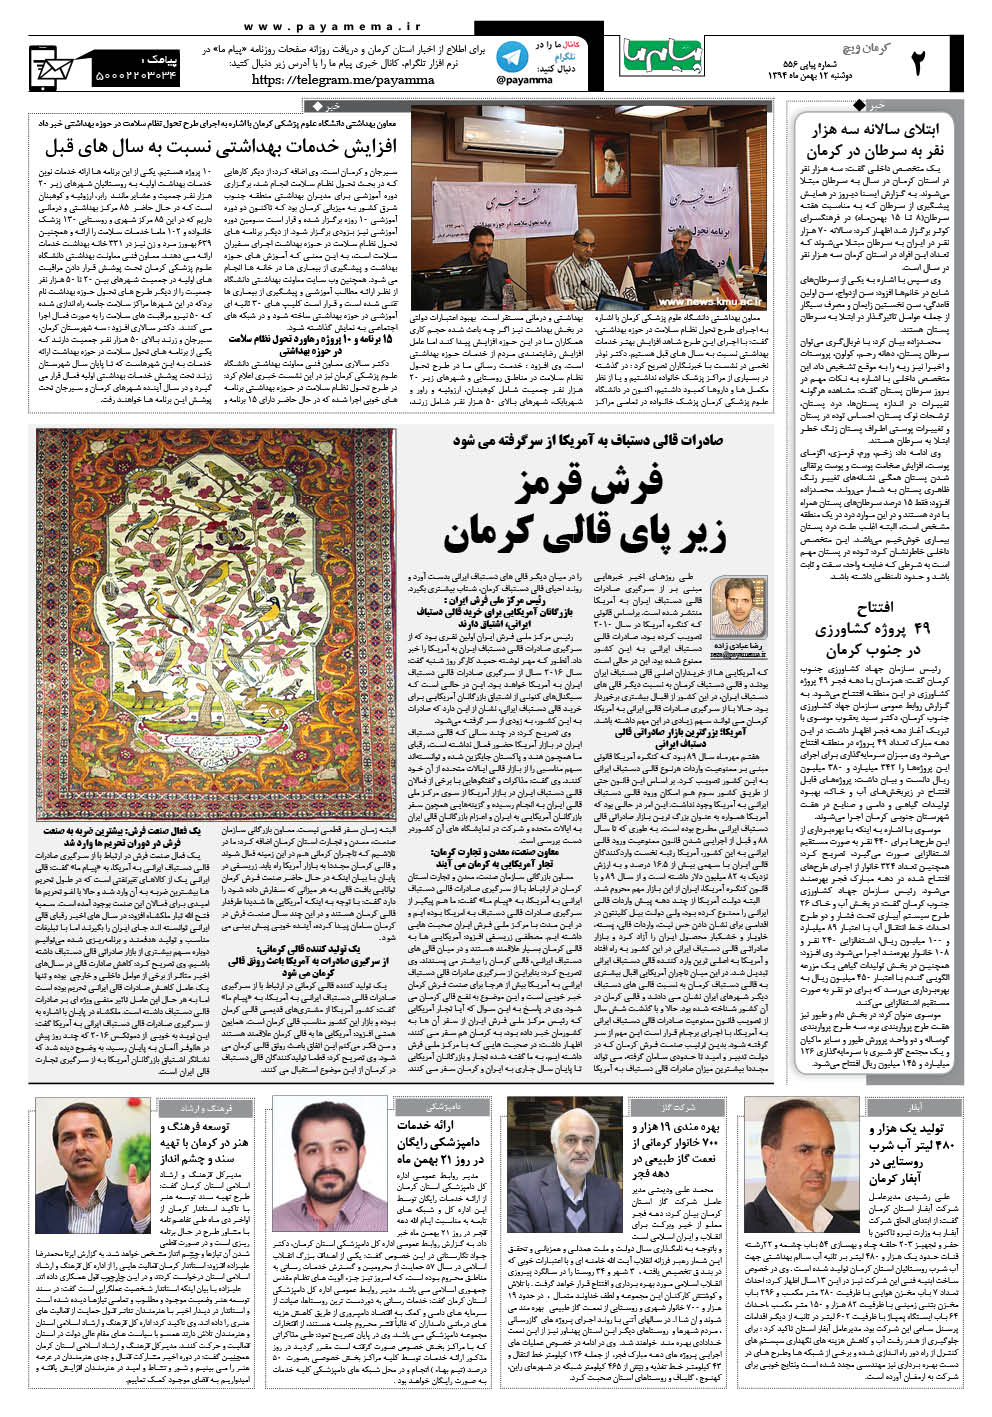 صفحه کرمان ویج شماره 556 روزنامه پیام ما